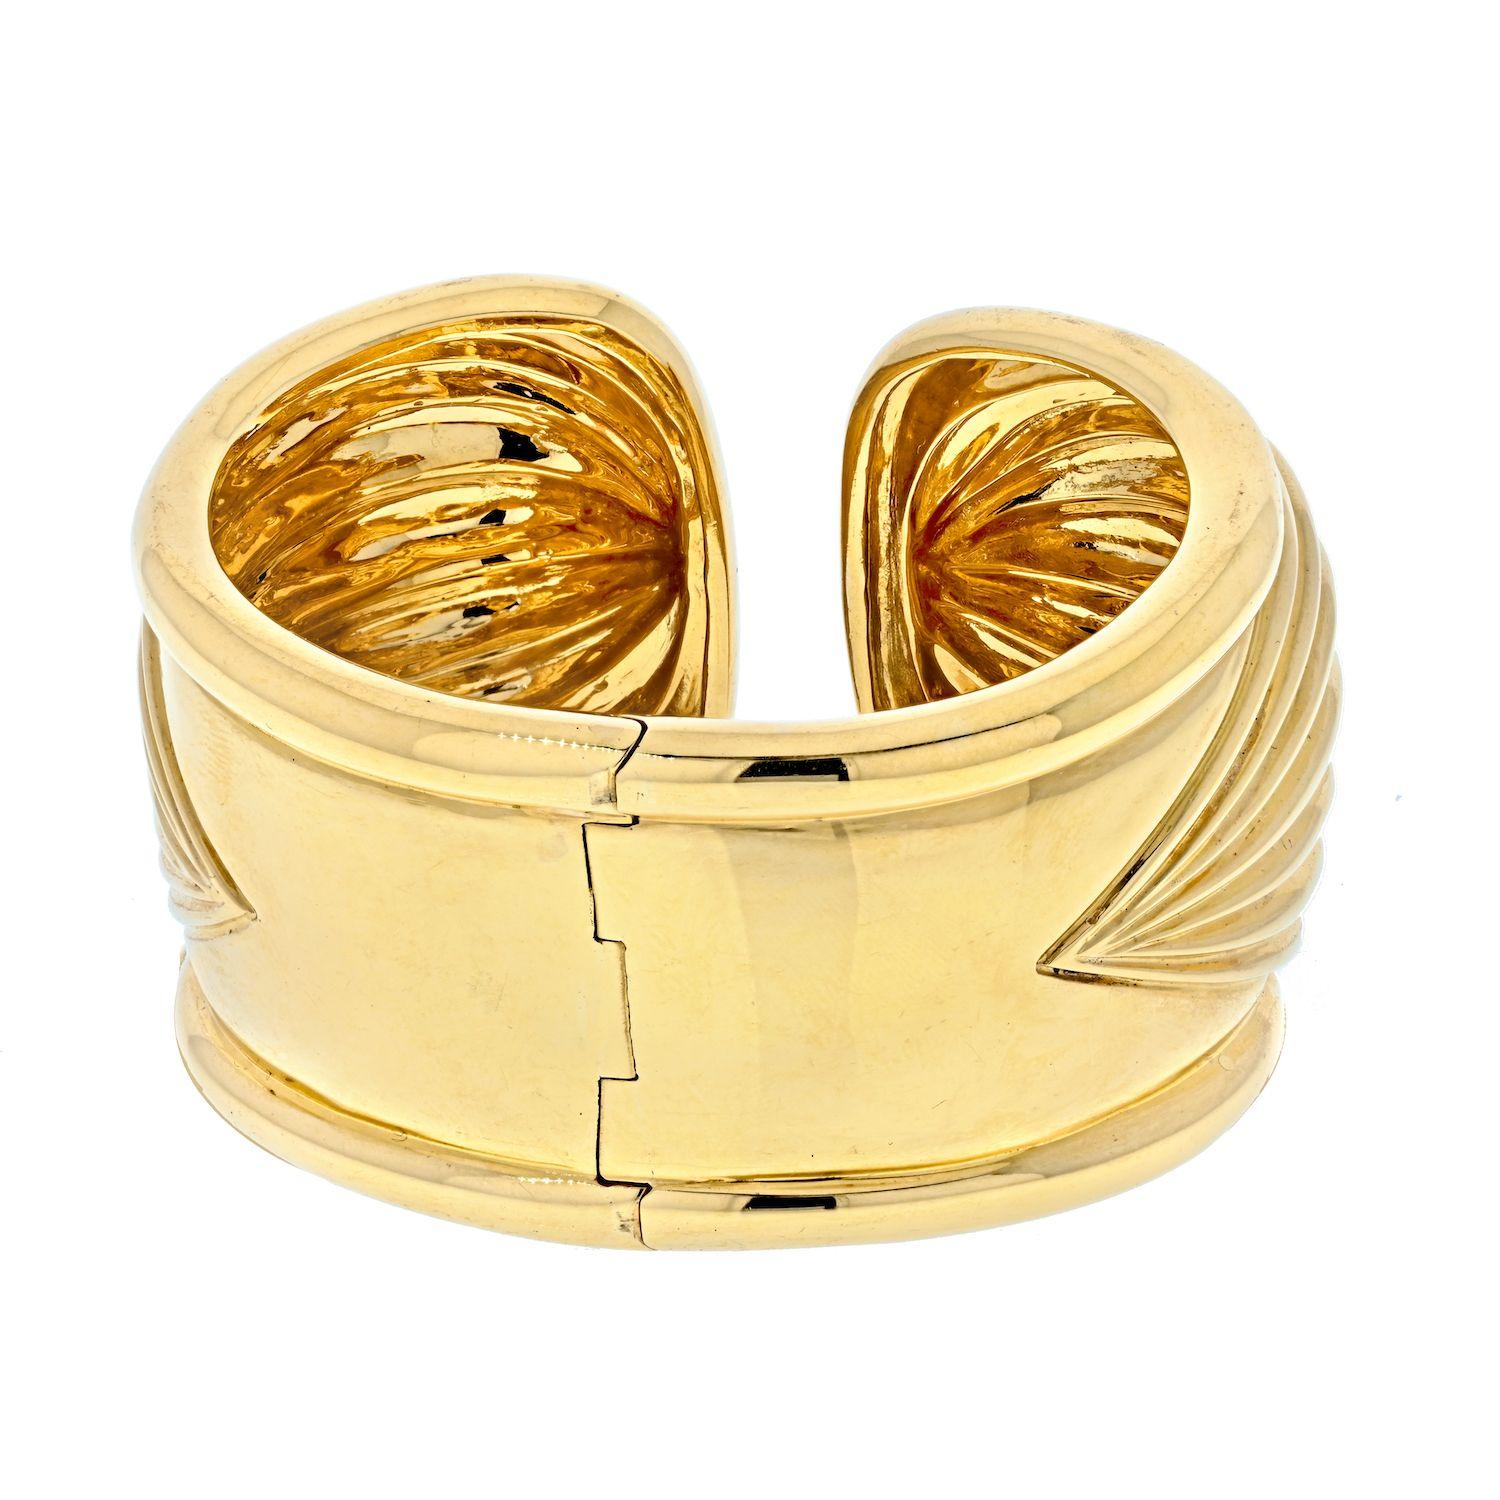 Diese sehr imposante geriffelte, 18k Gold Manschette Armband von David Webb misst eine volle 1,7 Zoll breit an der Front, verjüngt sich auf 1 Zoll auf der Rückseite. 

Das Armband aus 18-karätigem Gold wiegt über 100 Gramm und sorgt für ein